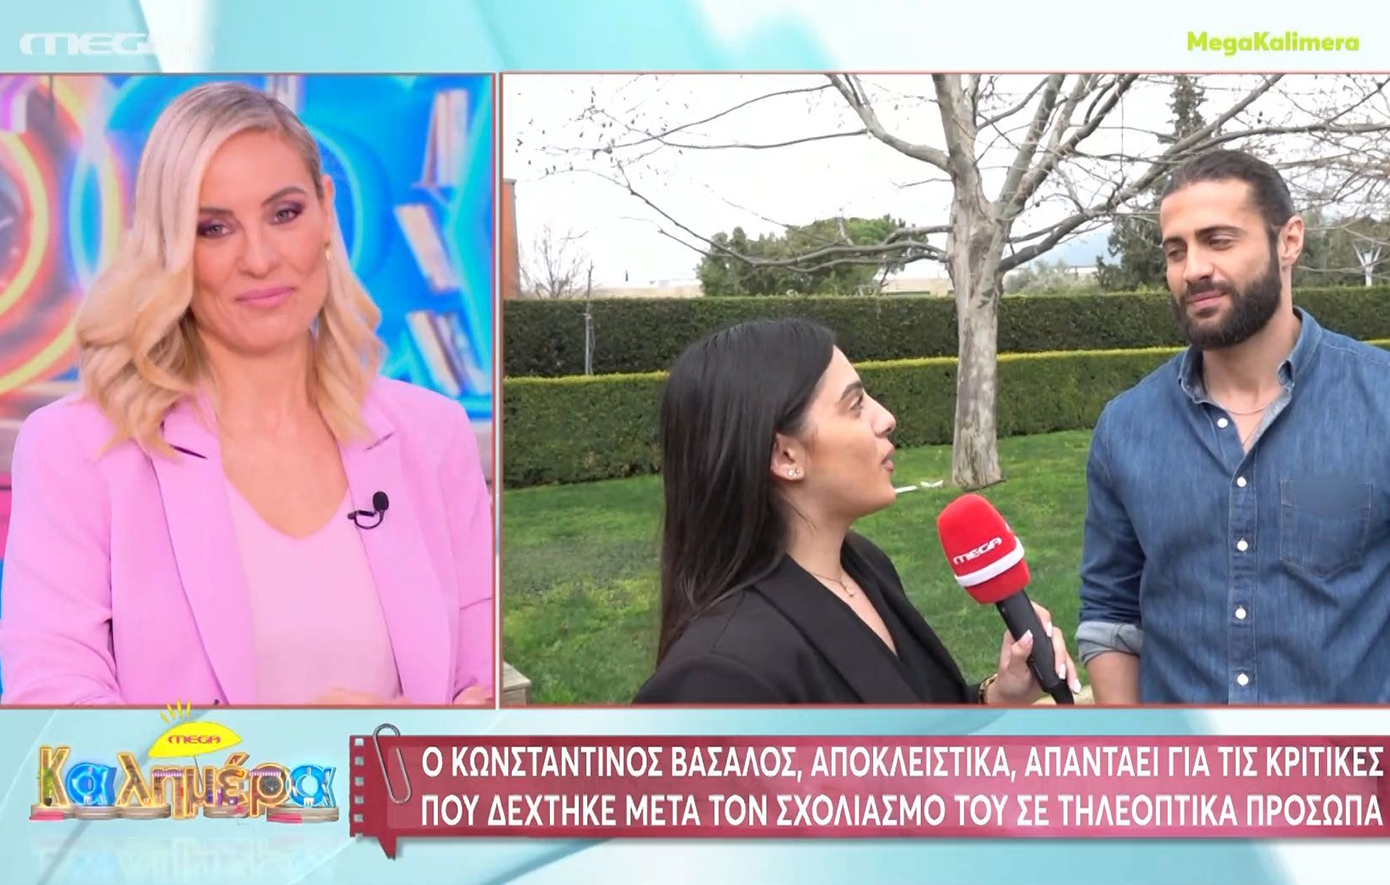 Κωνσταντίνος Βασάλος: Δεν πιστεύω ότι ευθύνεται η ομορφιά μου που βρίσκομαι ακόμα στην τηλεόραση